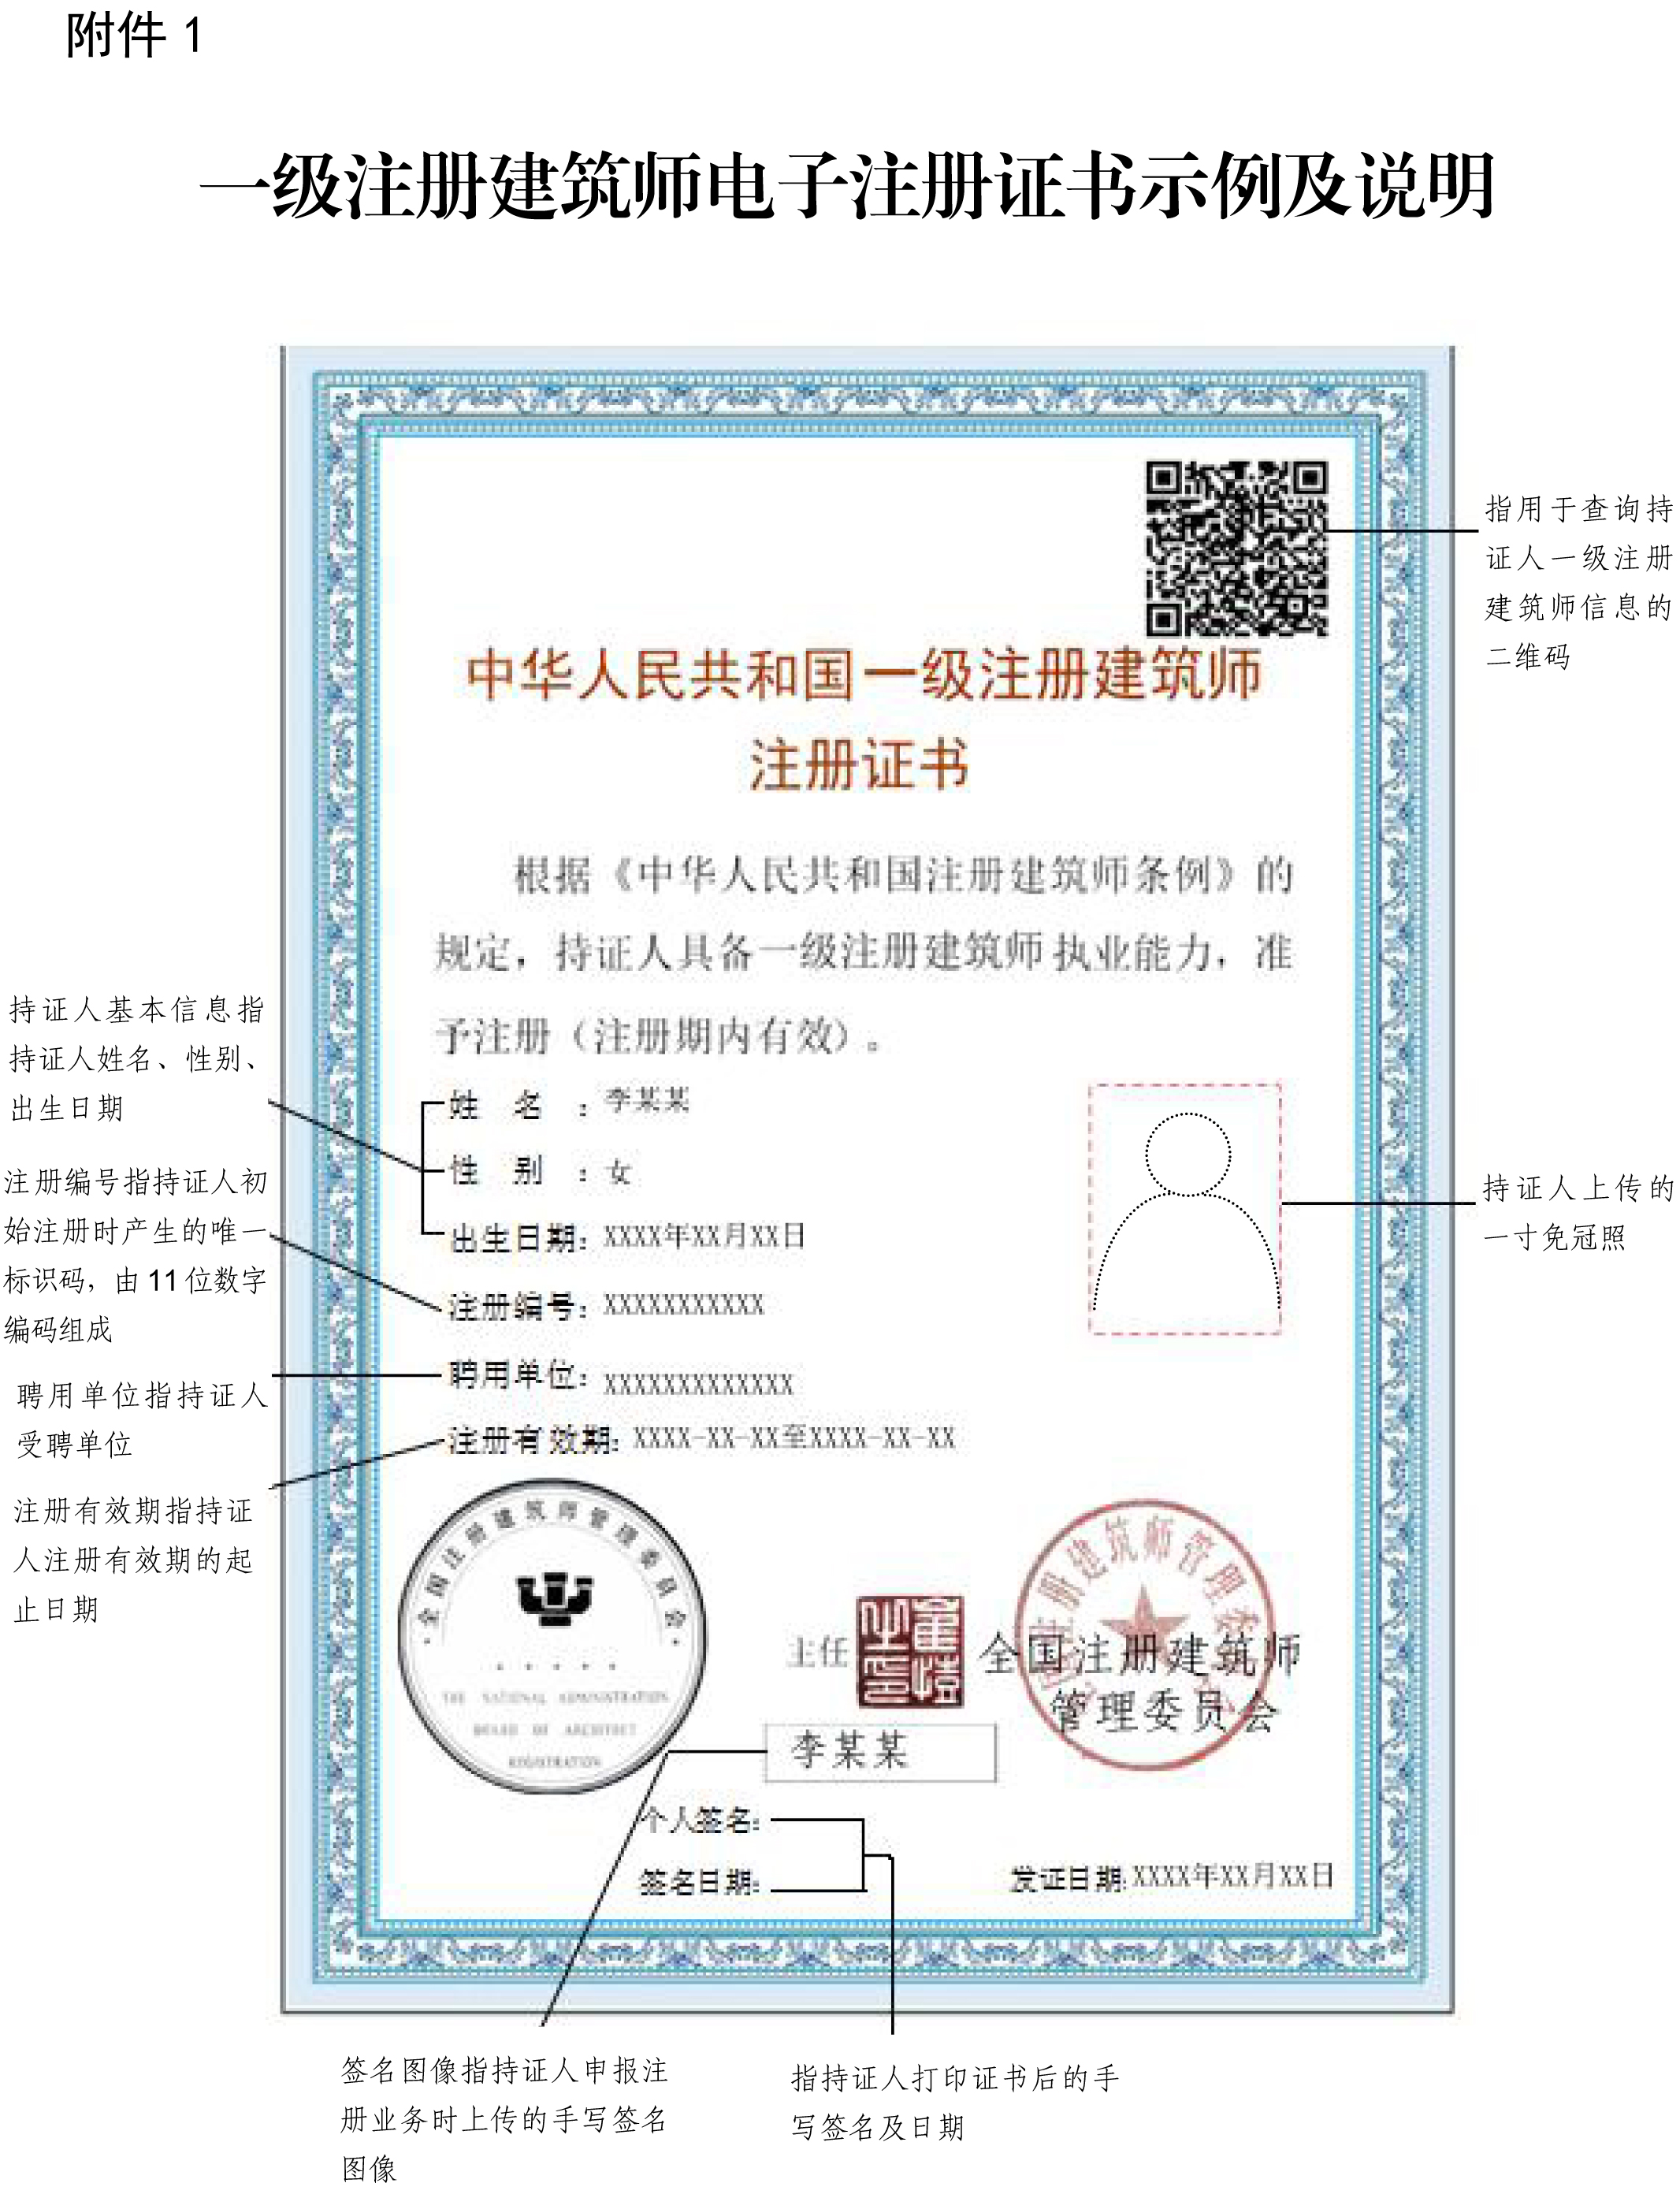 附件1一级注册建筑师电子注册证书示例及说明.jpg